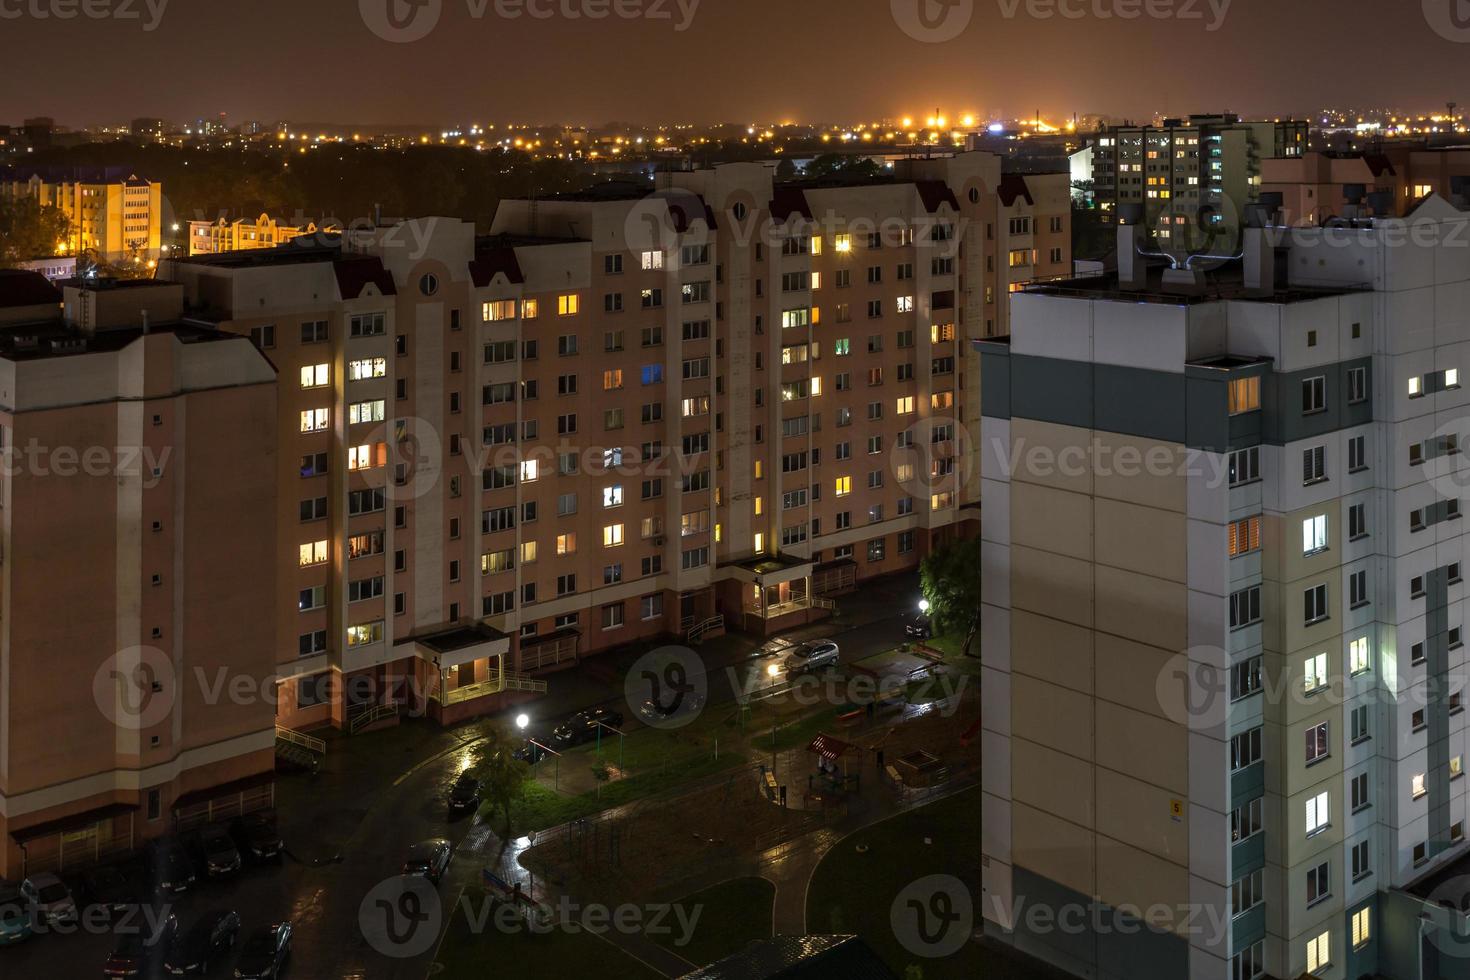 Nachtpanorama des Lichts in den Fenstern eines mehrstöckigen Gebäudes. Leben in einer Großstadt foto